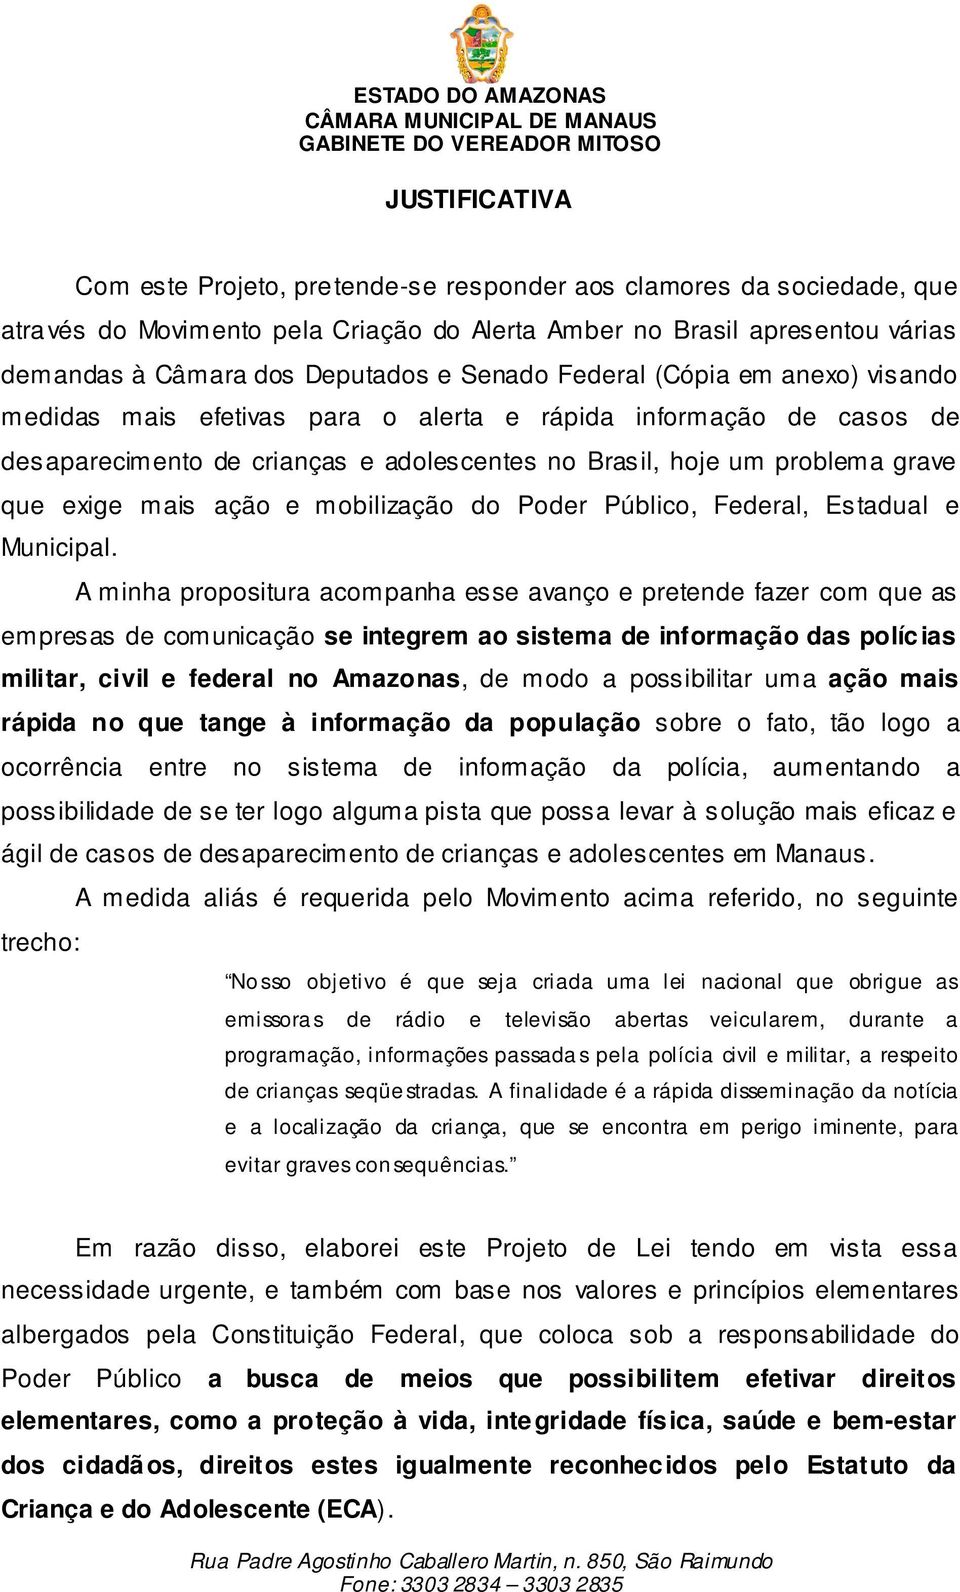 ação e mobilização do Poder Público, Federal, Estadual e Municipal.